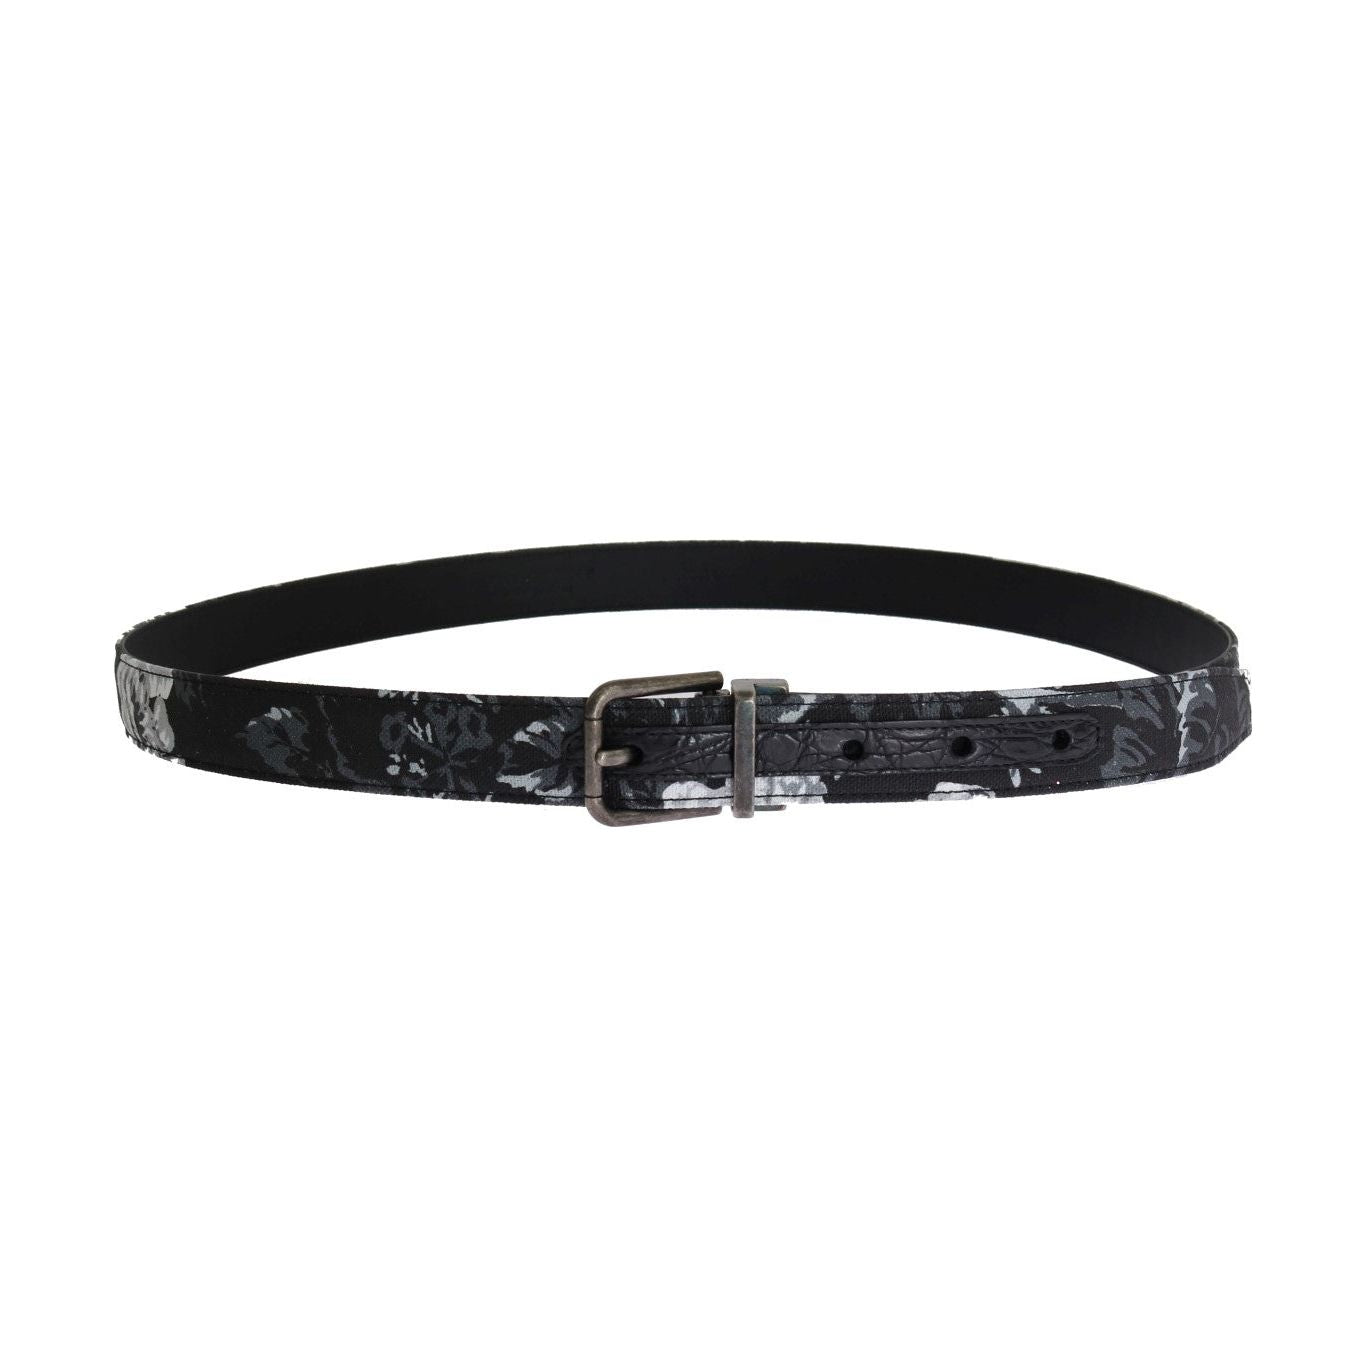 Dolce & Gabbana Elegant Floral Patterned Men's Luxury Belt black-cayman-linen-leather-belt Belt 456472-black-cayman-linen-leather-belt-2.jpg